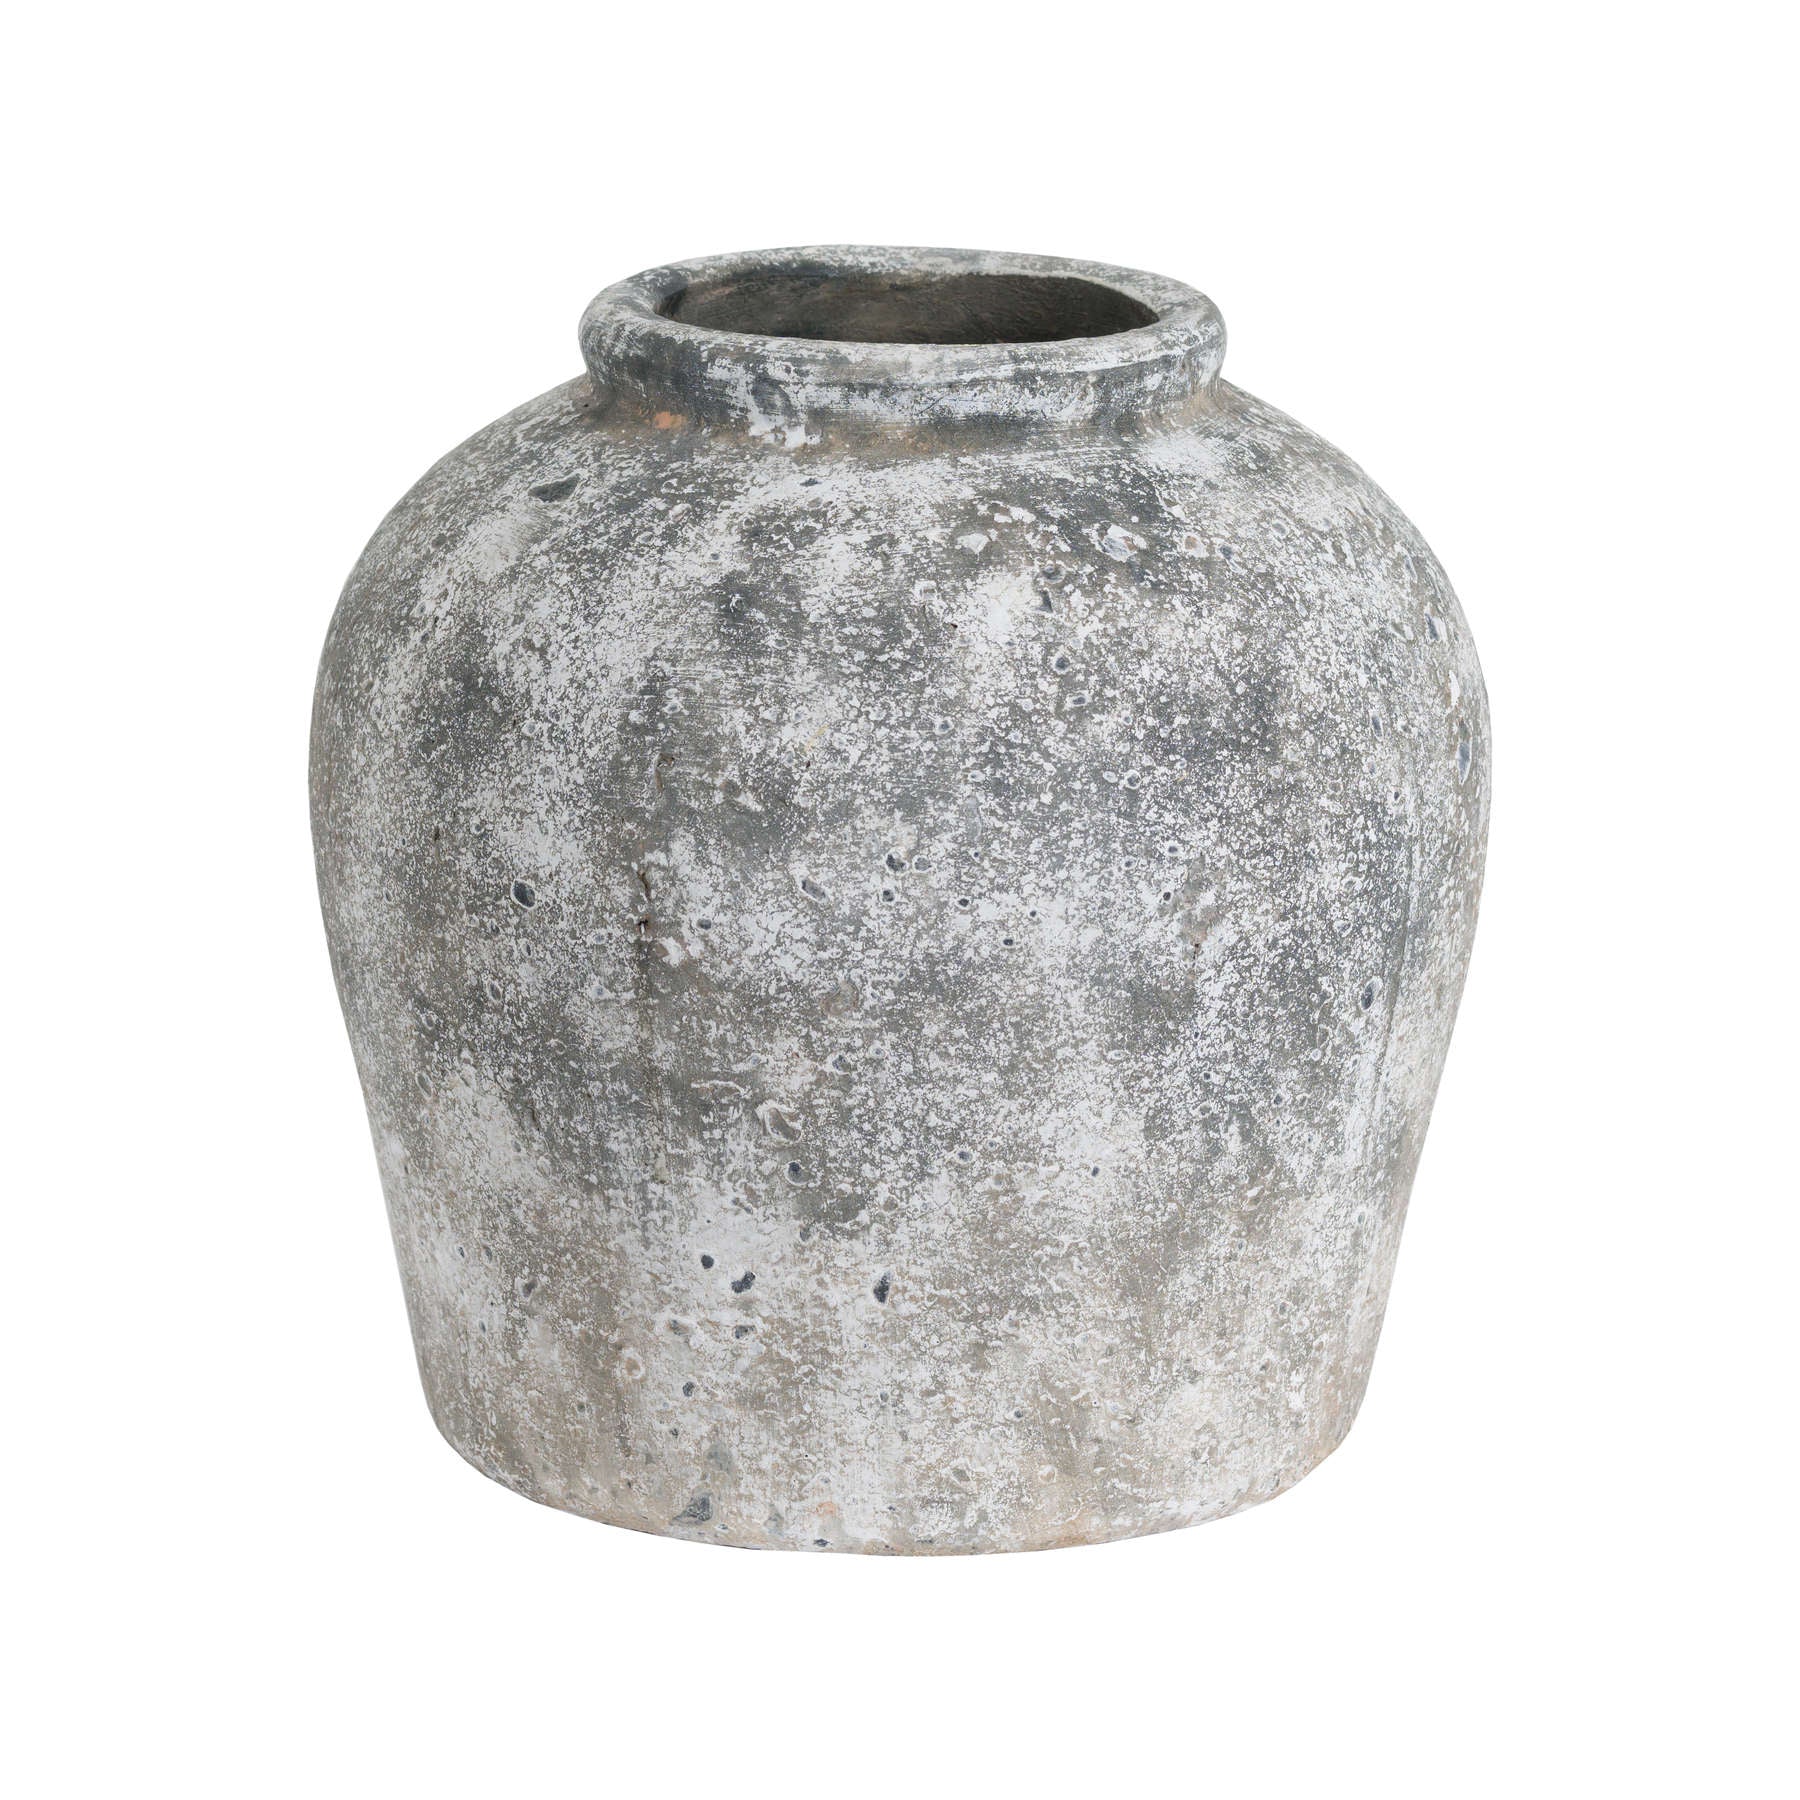 Aged Stone Rustic Ceramic Vase